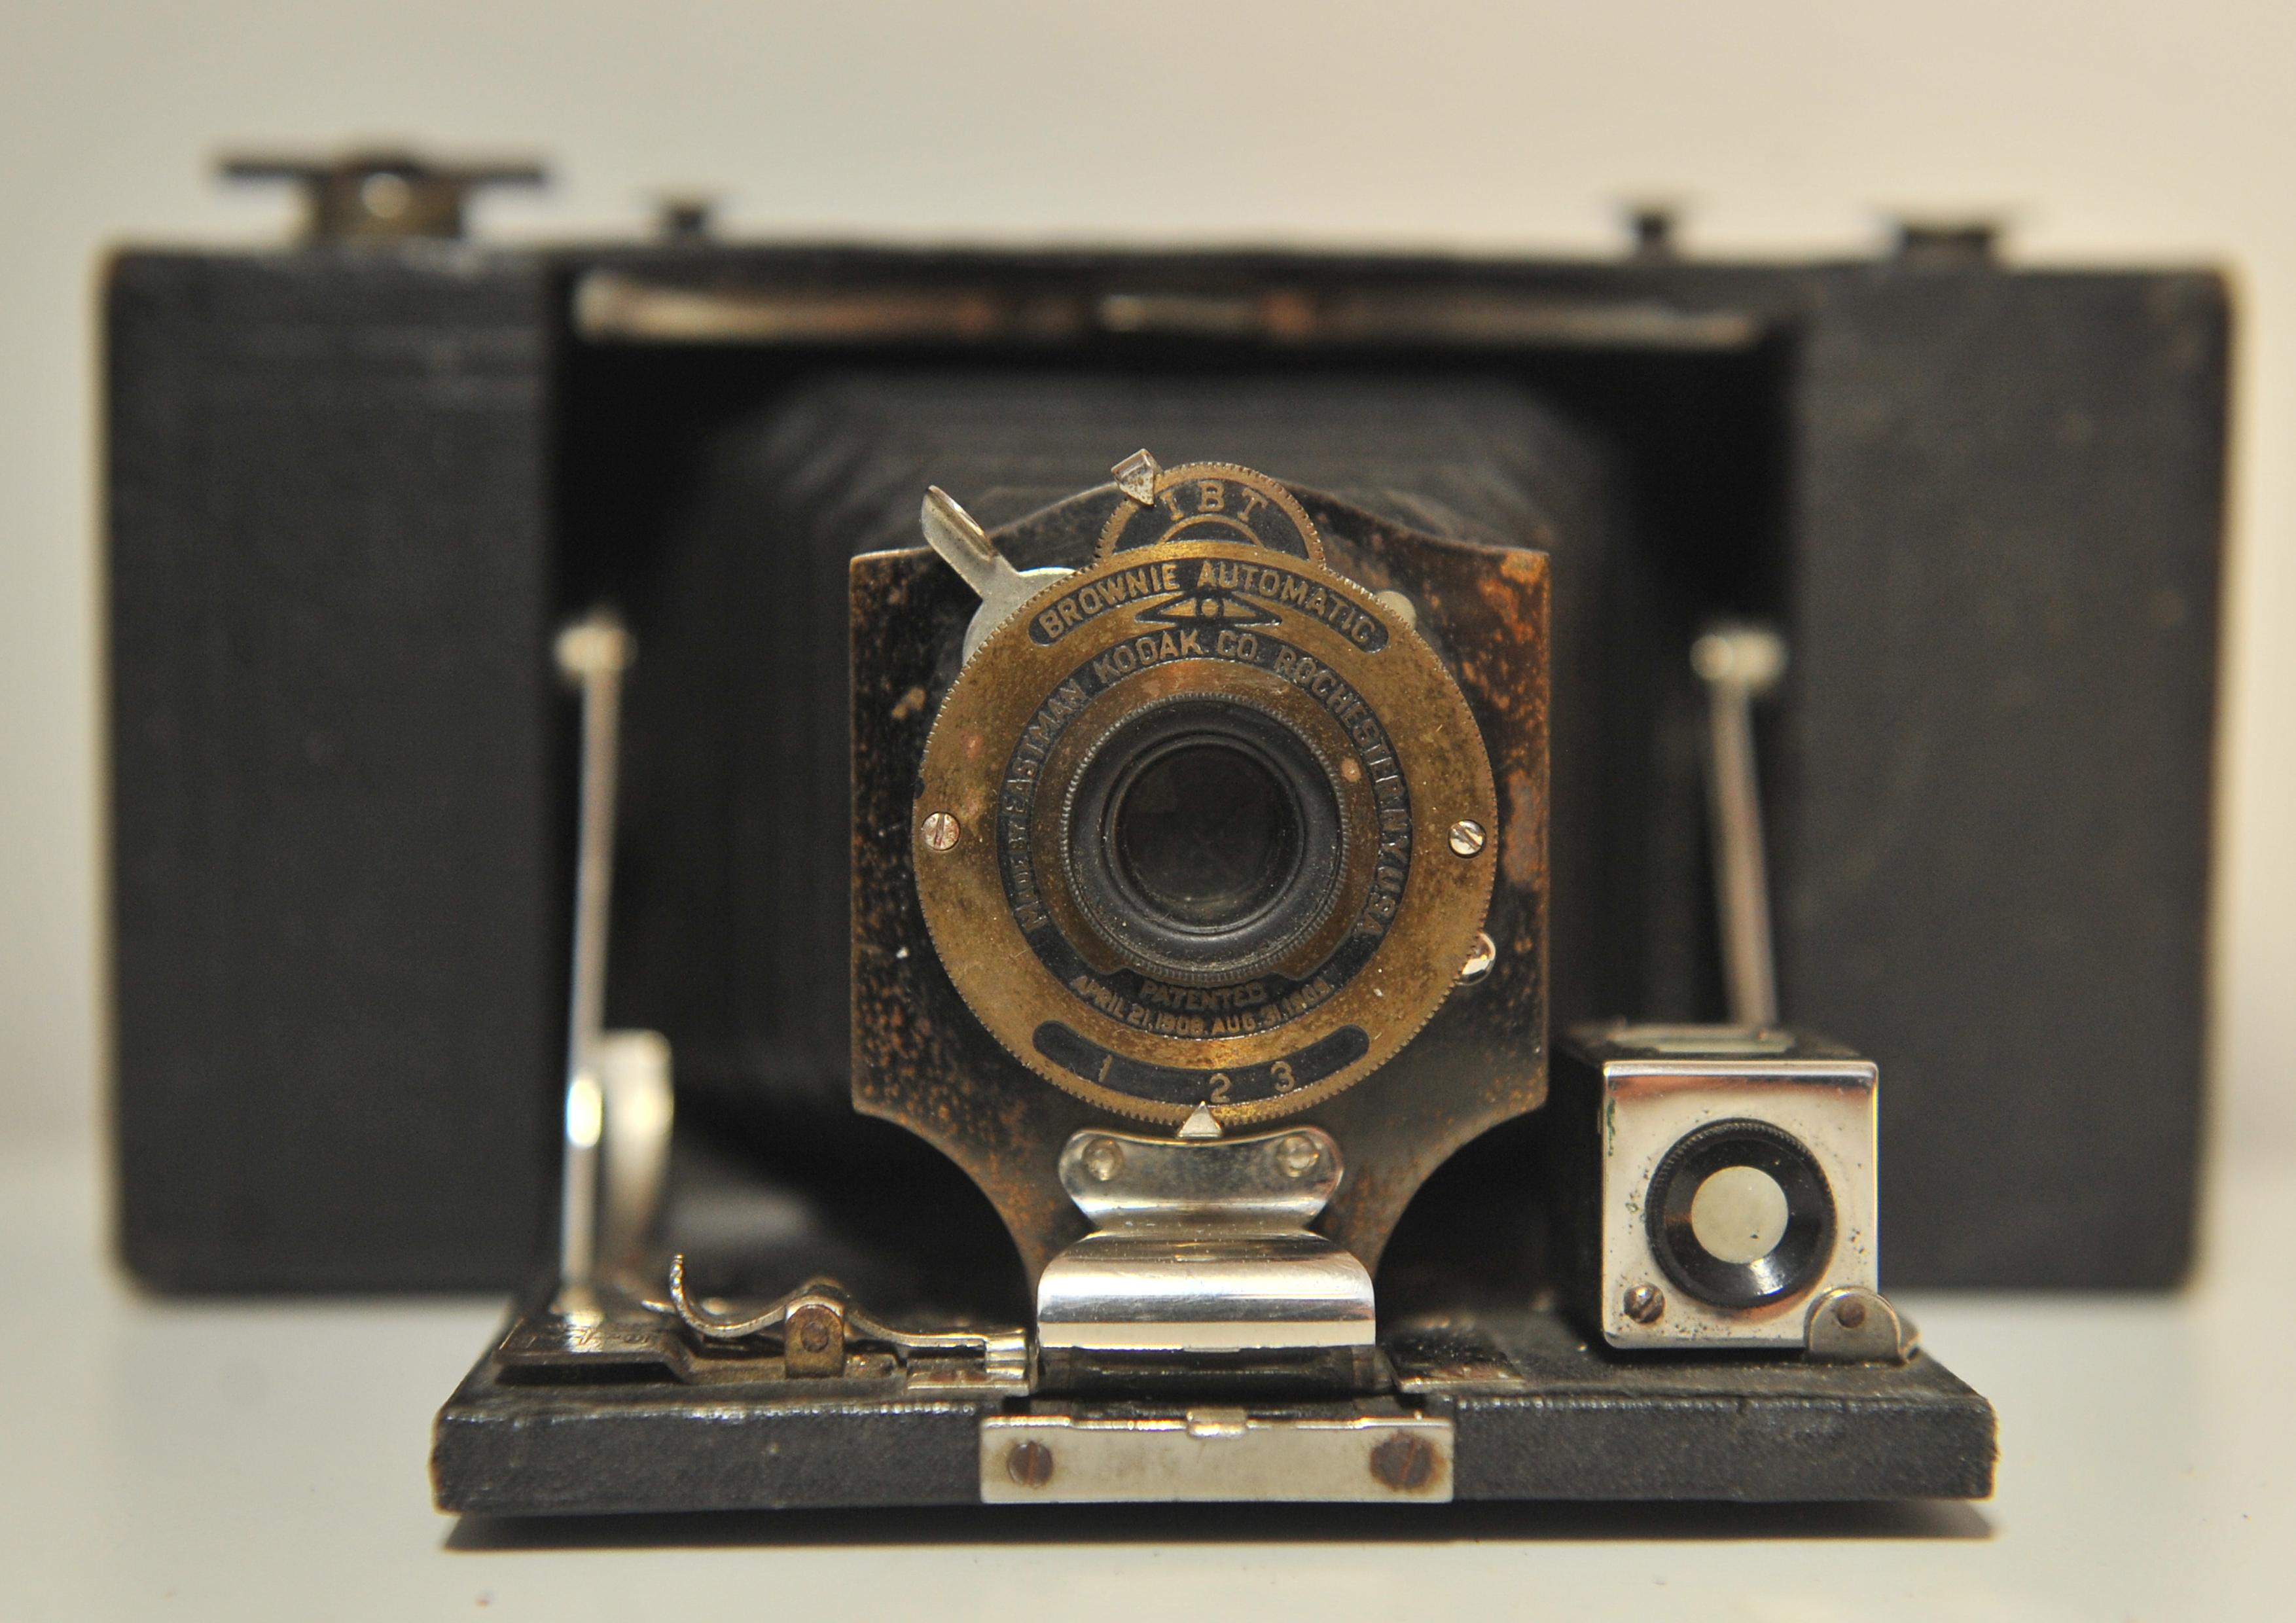 Kodak No 2 Klappbare Tasche Braunie Modell B 120 Roll Film Kamera USA 1909

Die No 2 Folding Pocket Brownie ist eine Faltkamera, die von Kodak in Rochester, NY, USA, ab ca. 1909 hergestellt wurde. Sie hat ein rechteckiges, kunstlederbezogenes